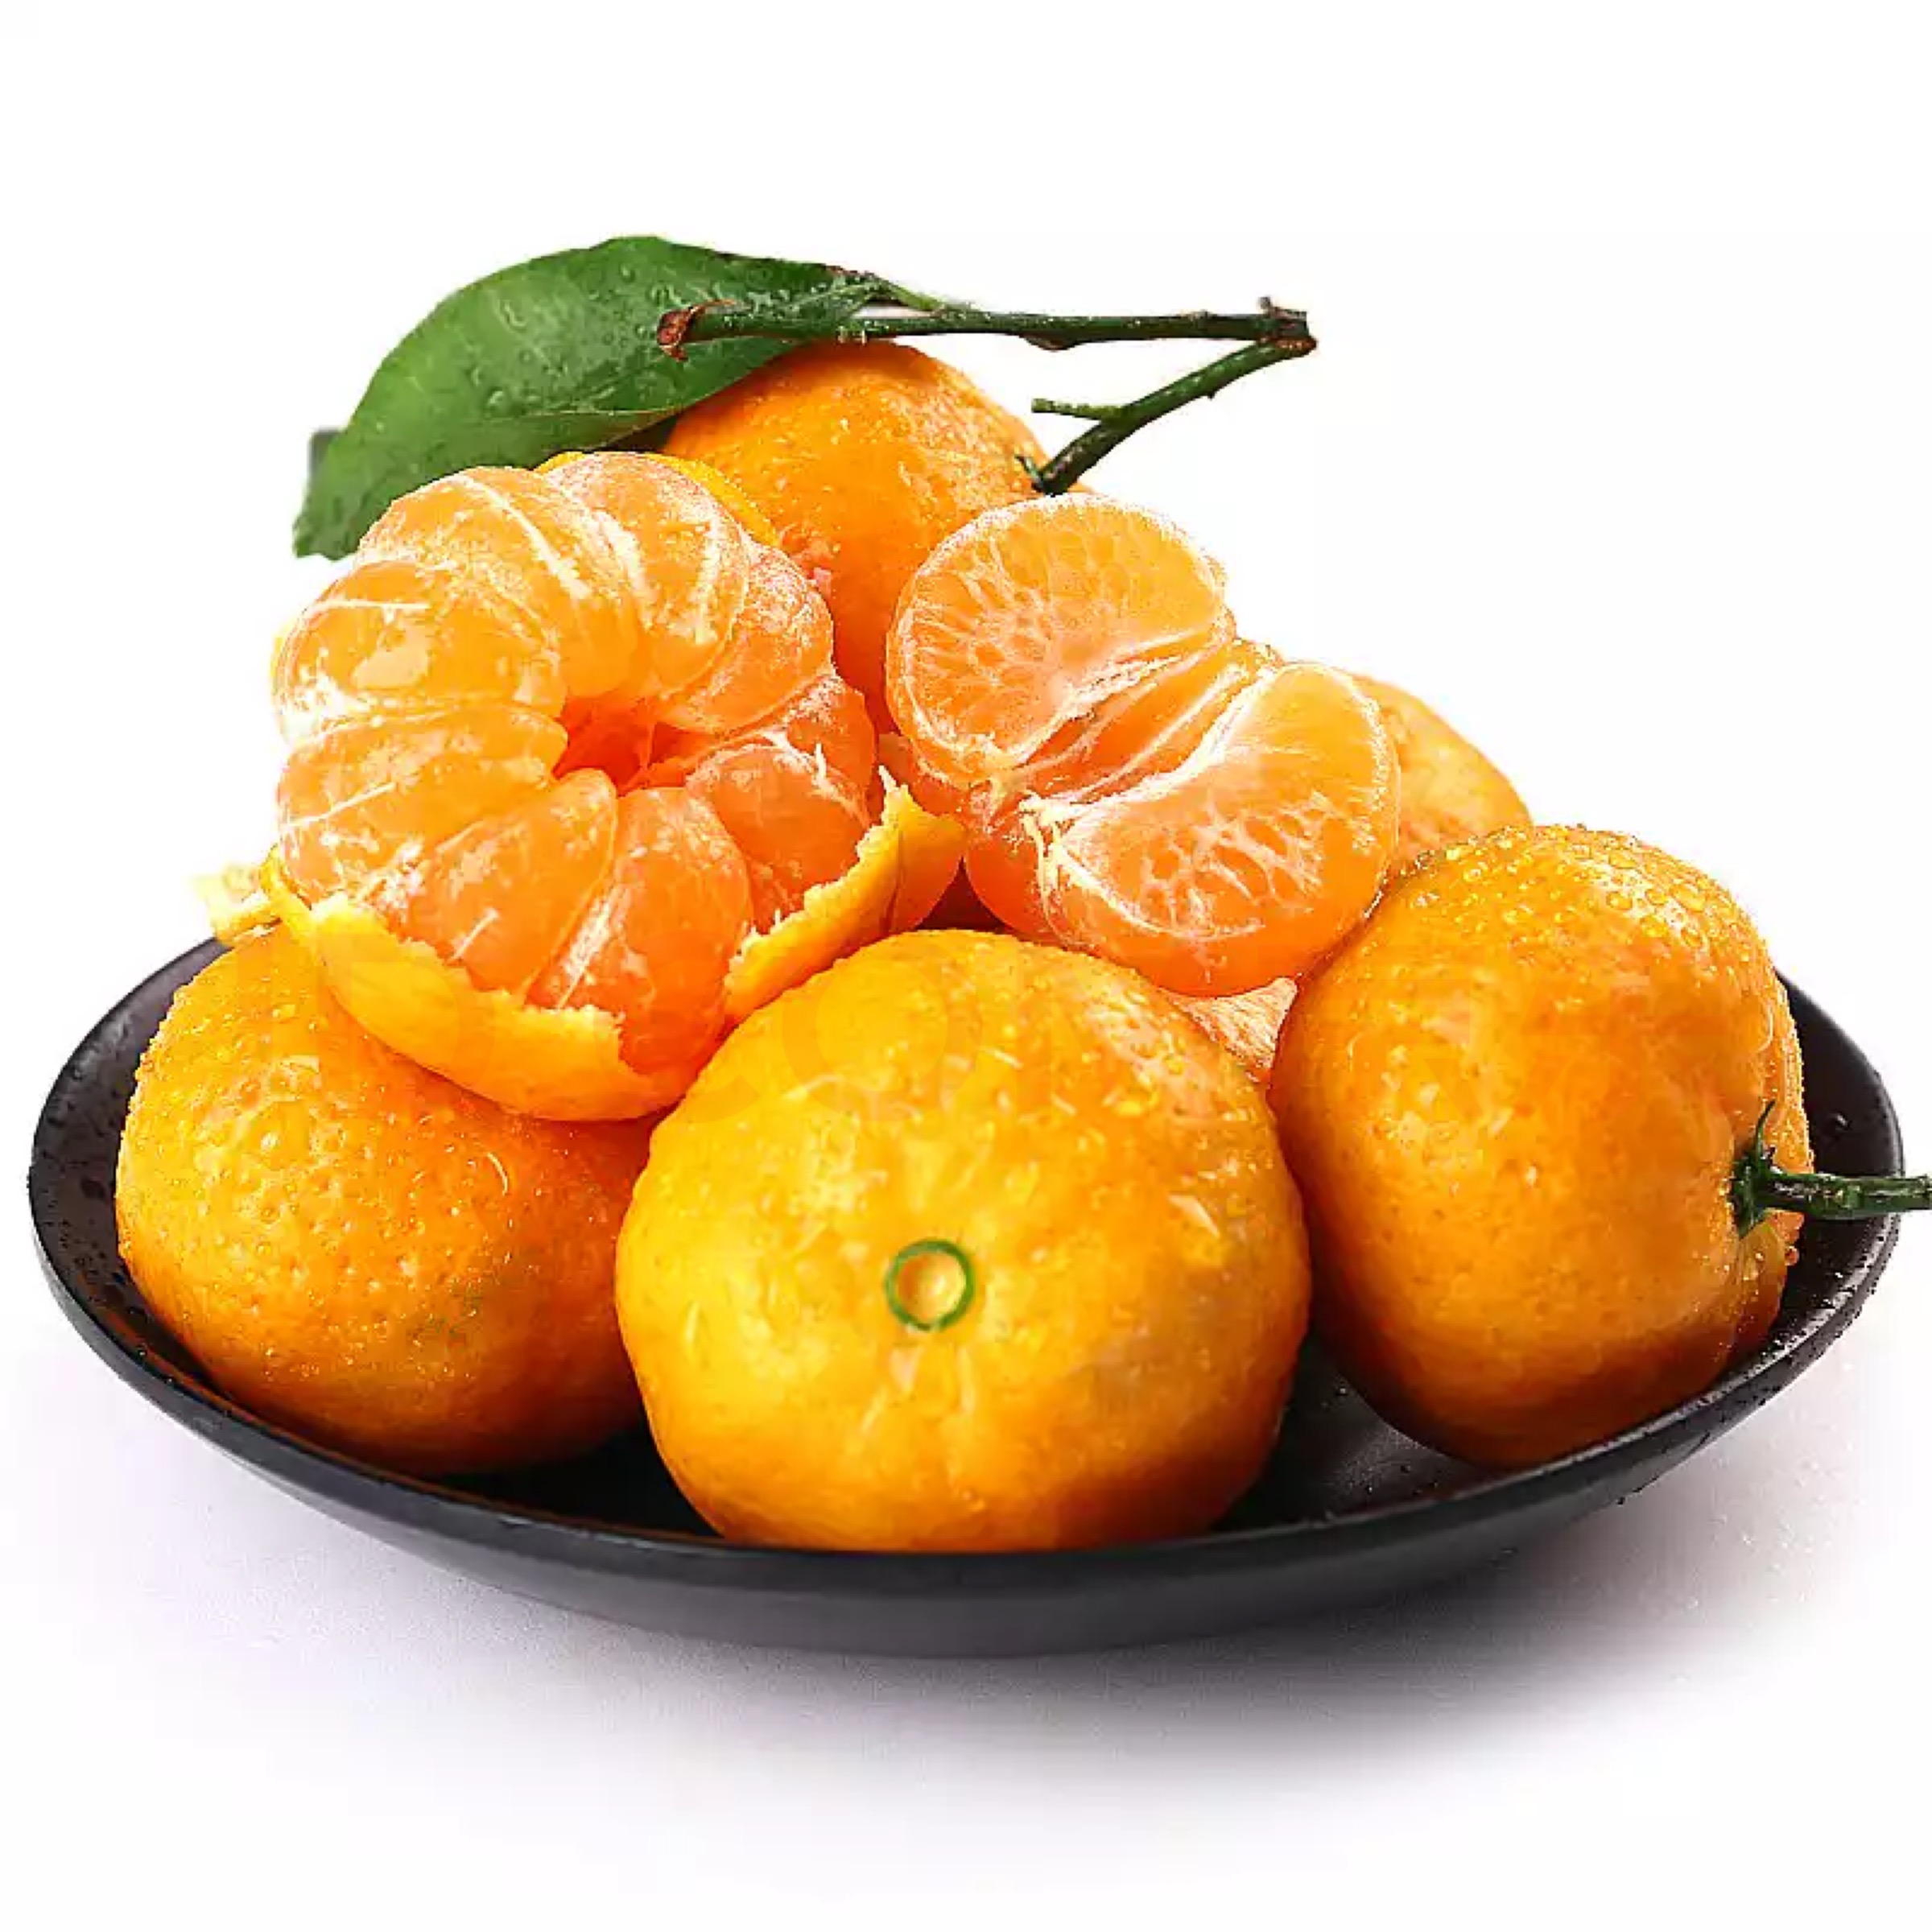 【15日发货】柑桔中的精品,水果中的佳品~南丰小蜜桔3斤,汁多少渣